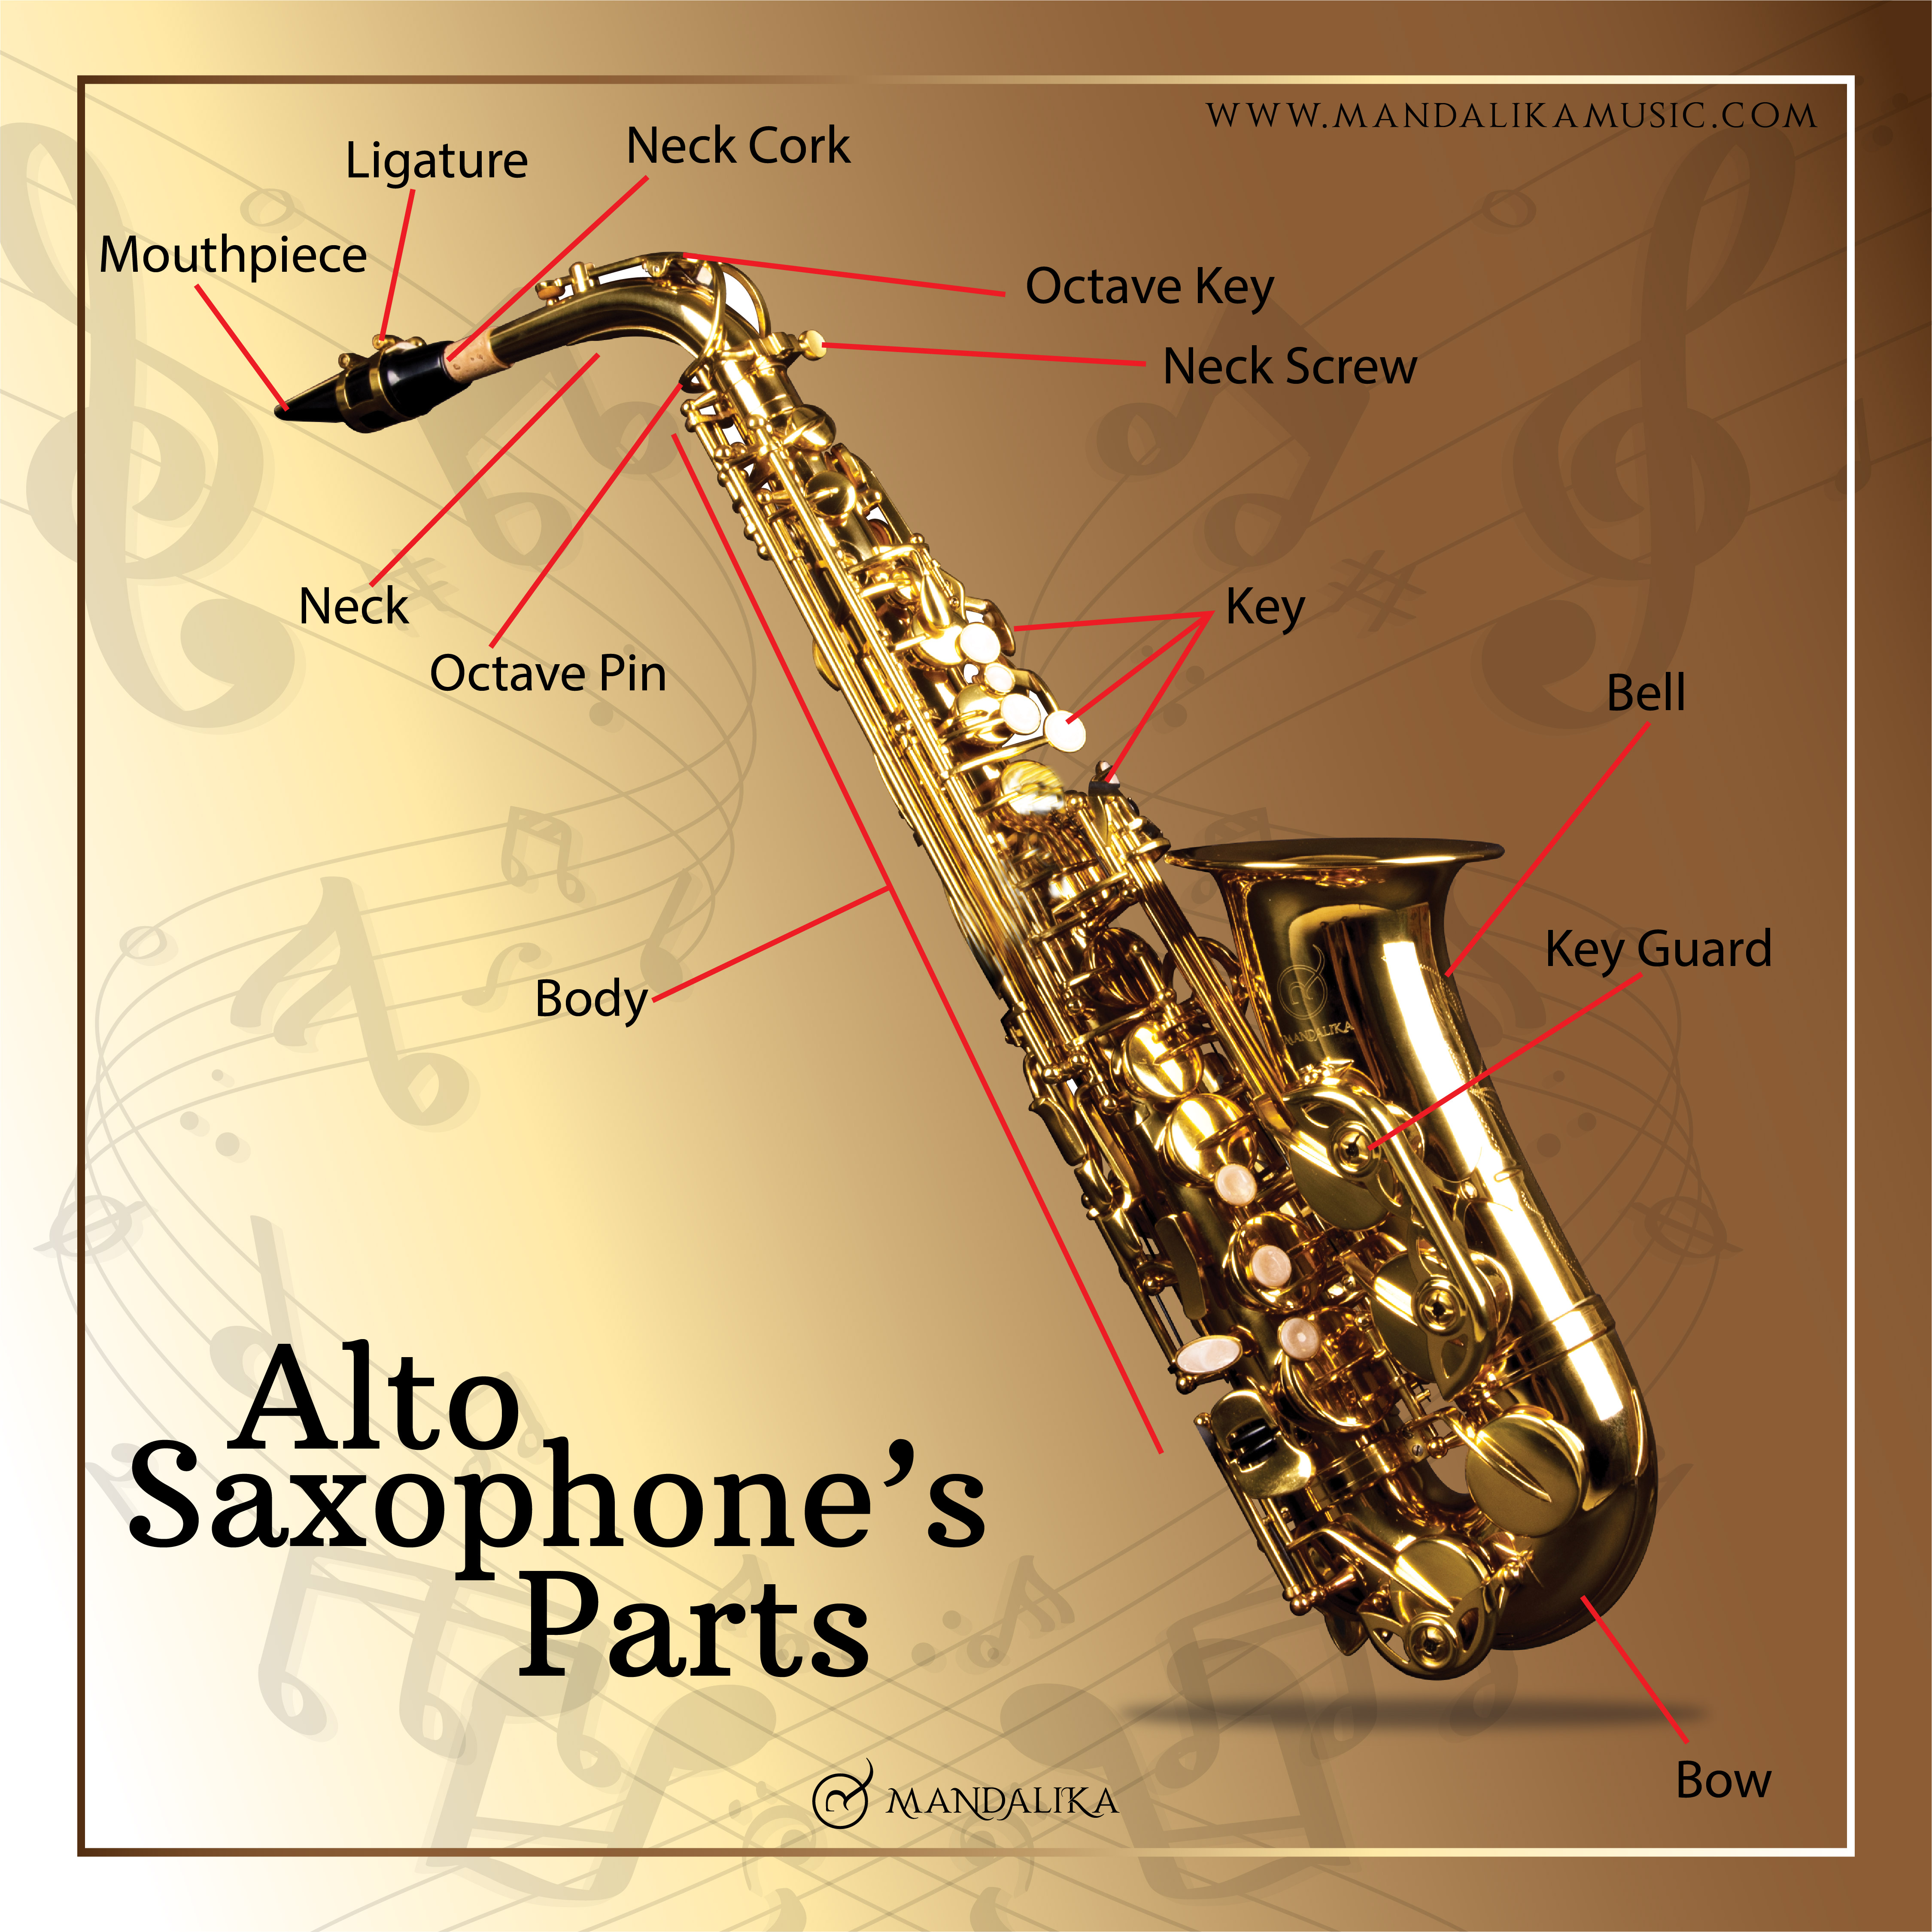 Mengenal Bagian dari Saxophone